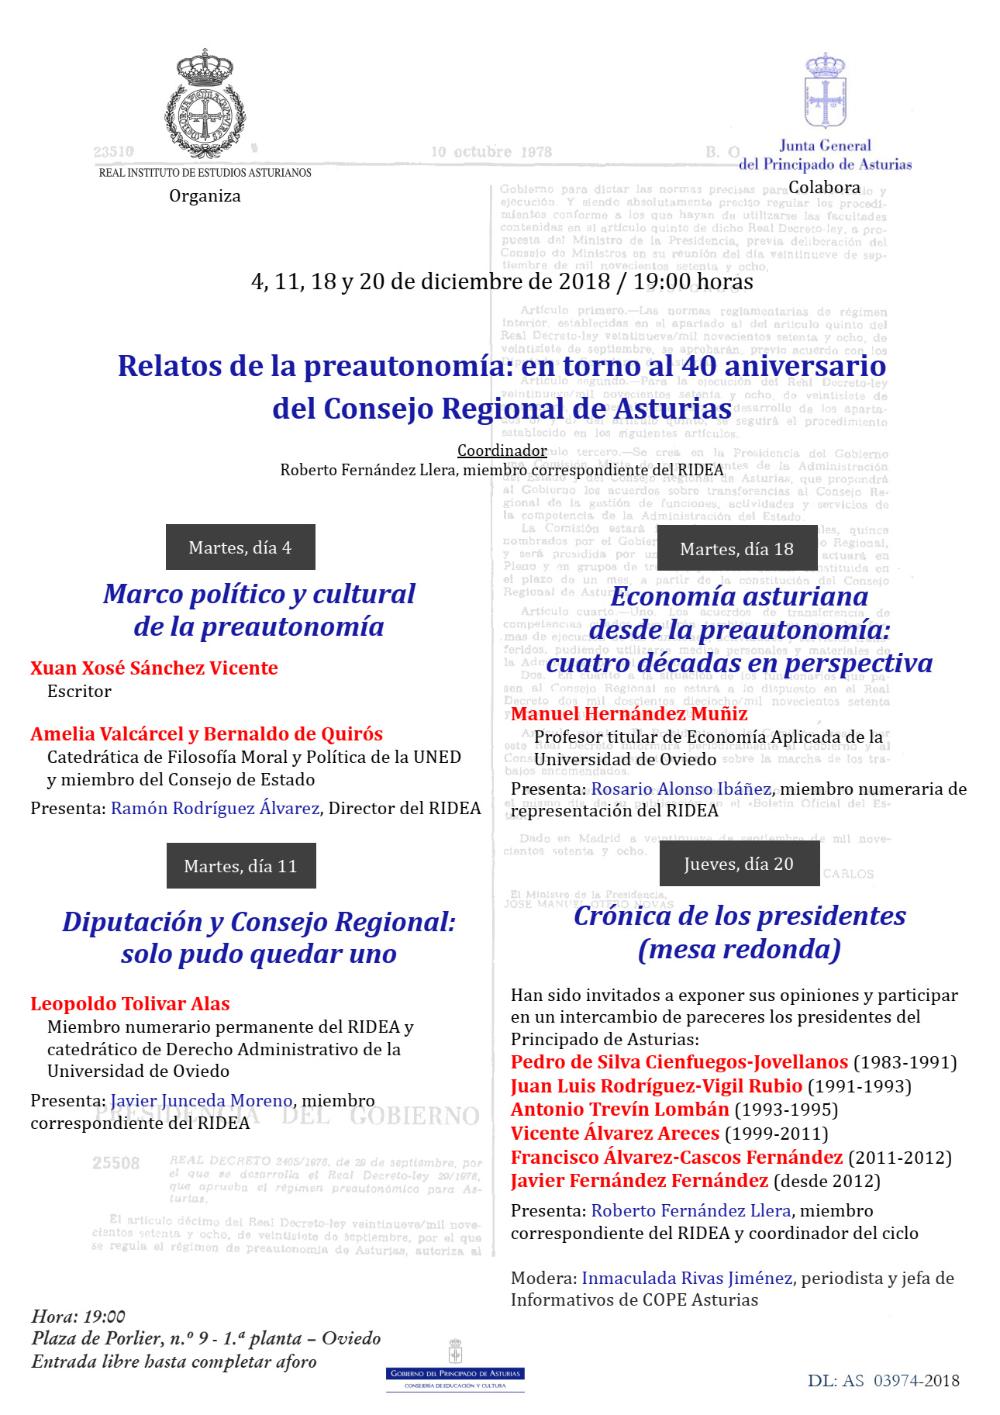 Imagen - Actos conmemorativos en torno al 40 aniversario del Consejo Regional de Asturias